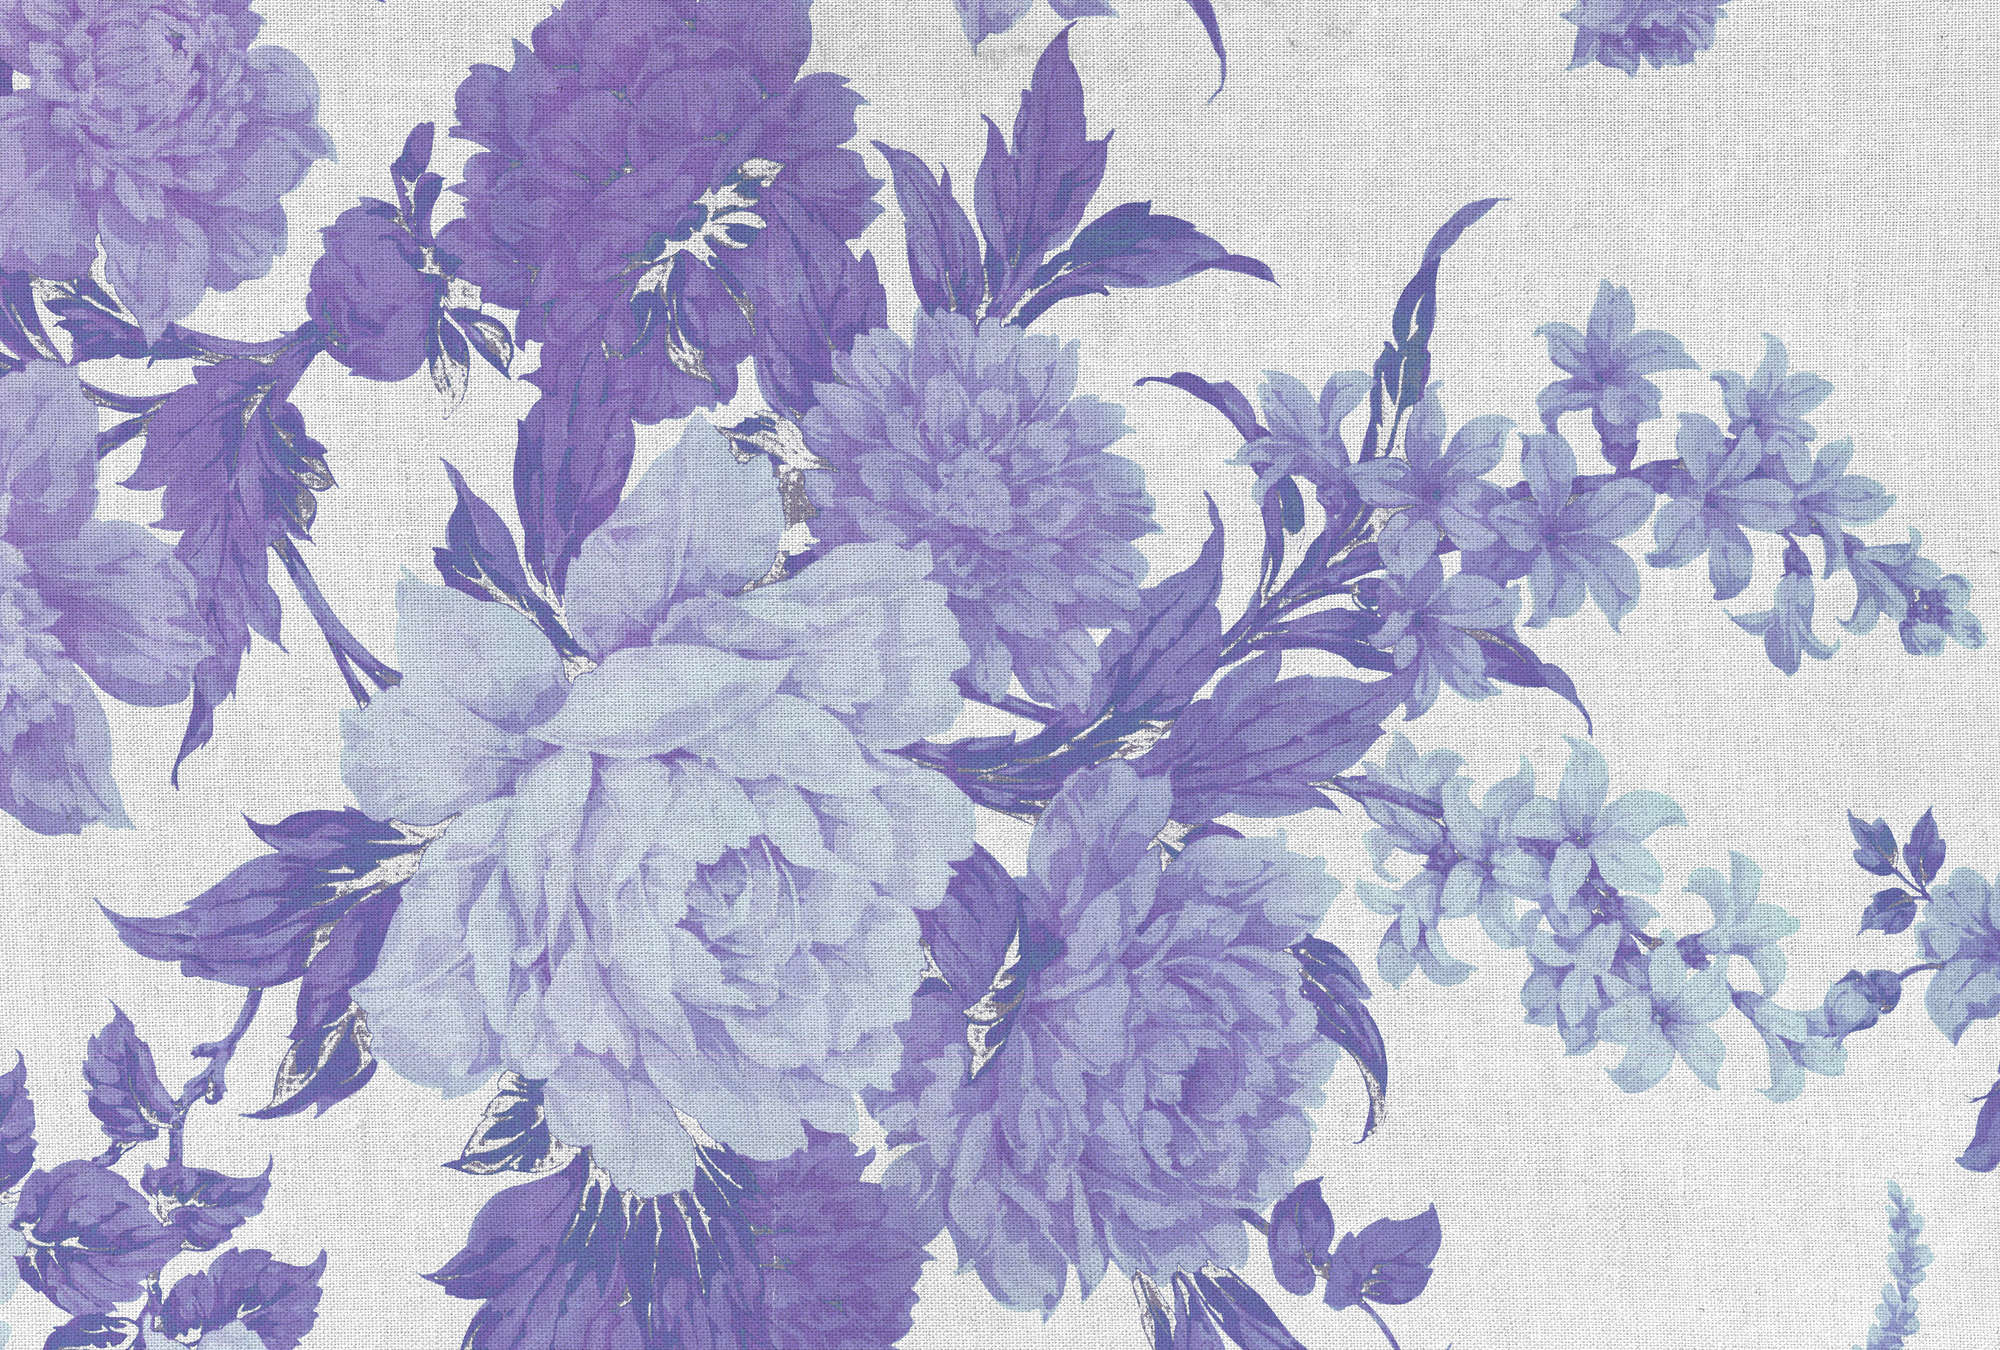             Papel pintado con rosas, adornos florales y aspecto textil - Púrpura, azul, blanco
        